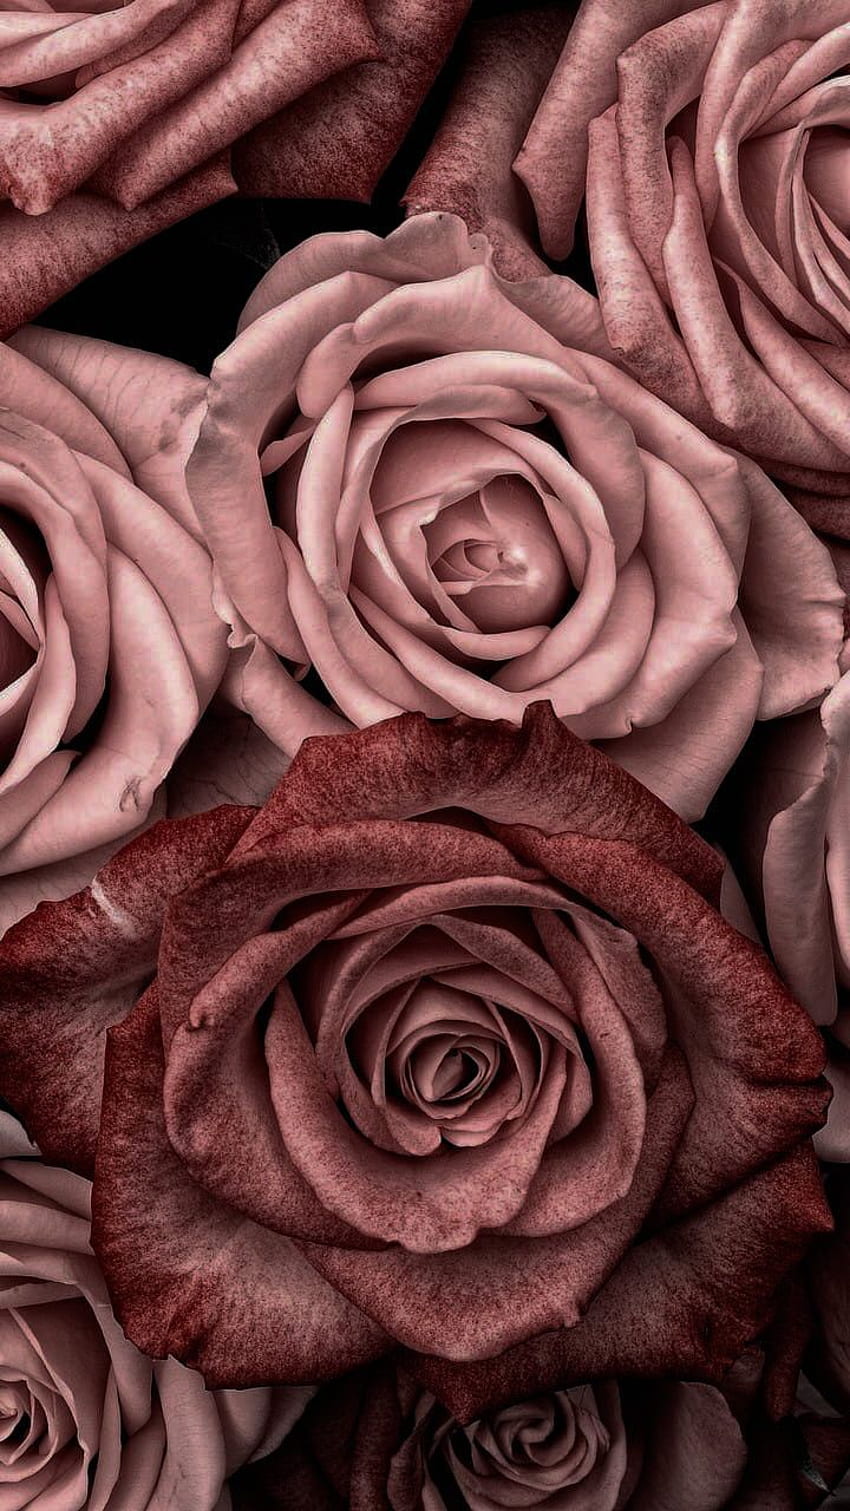 Những bông hoa hồng màu vàng hồng nhẹ nhàng và duyên dáng, tạo thành một cảnh quan tuyệt đẹp, làm cho bức ảnh trở nên hoàn hảo và thu hút bất cứ ai nhìn vào nó.